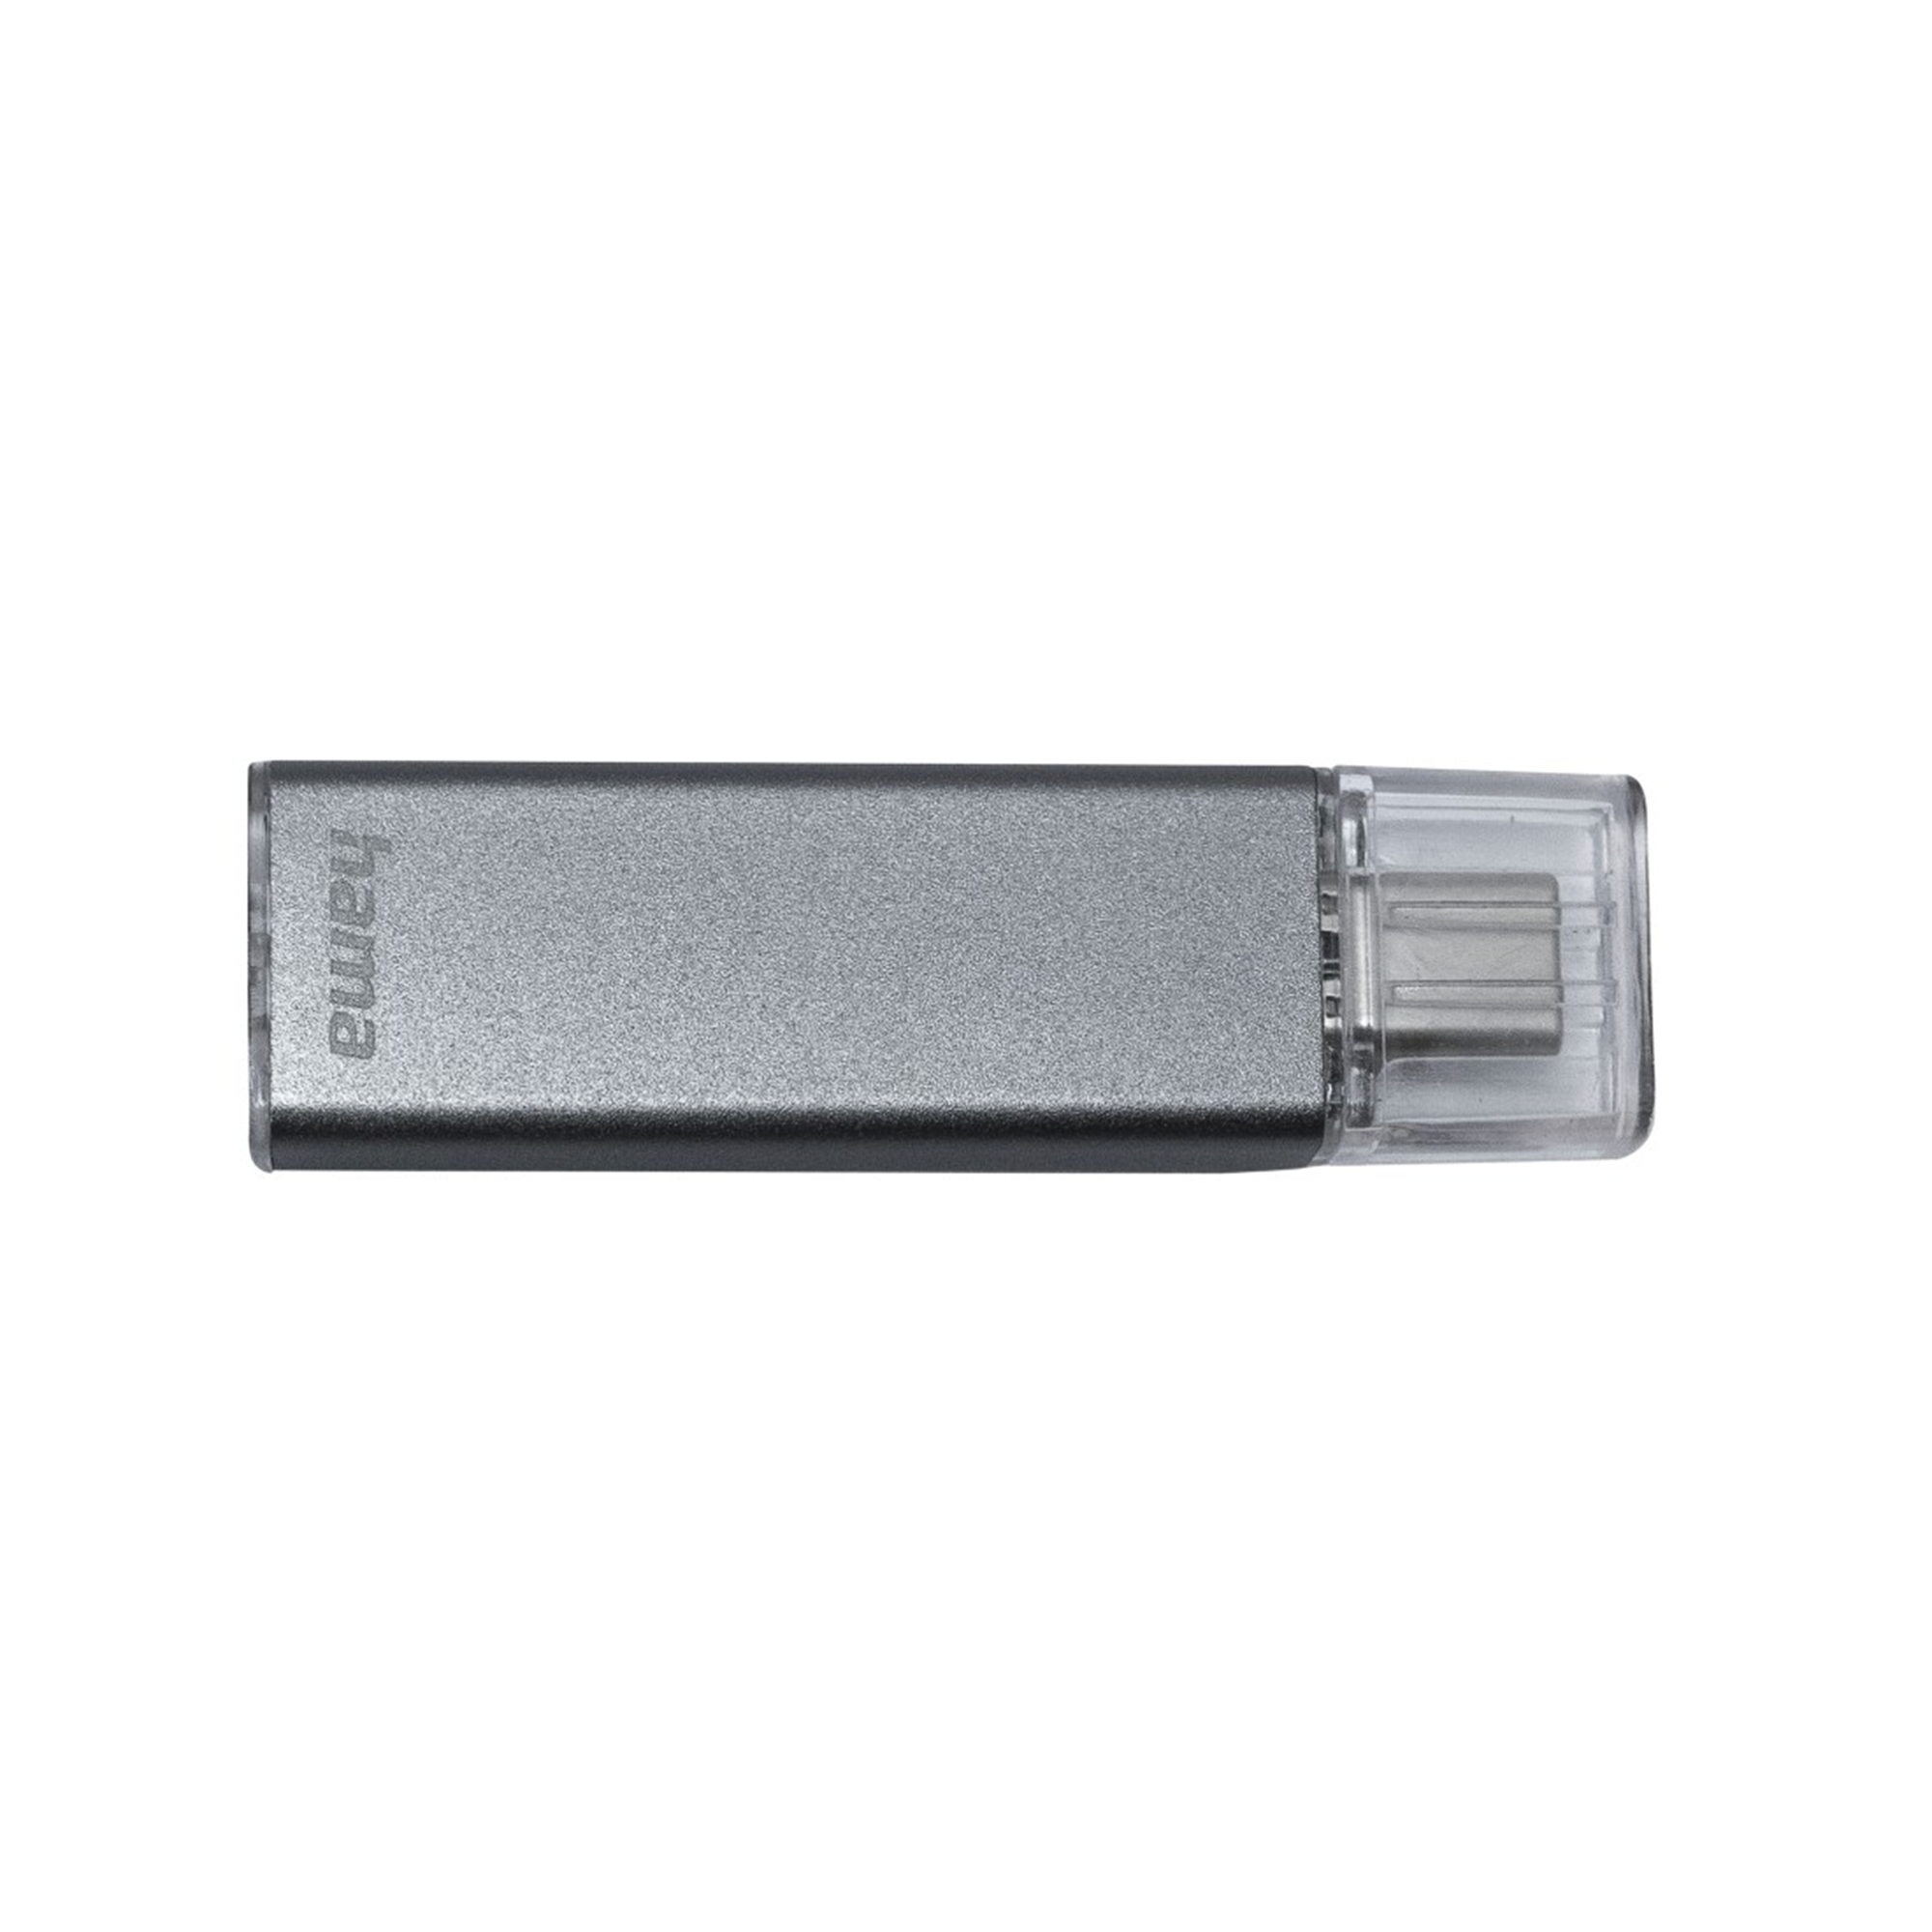 HAMA USB-Stick GB) 32 Classic (Anthrazit, 32 Uni-C GB